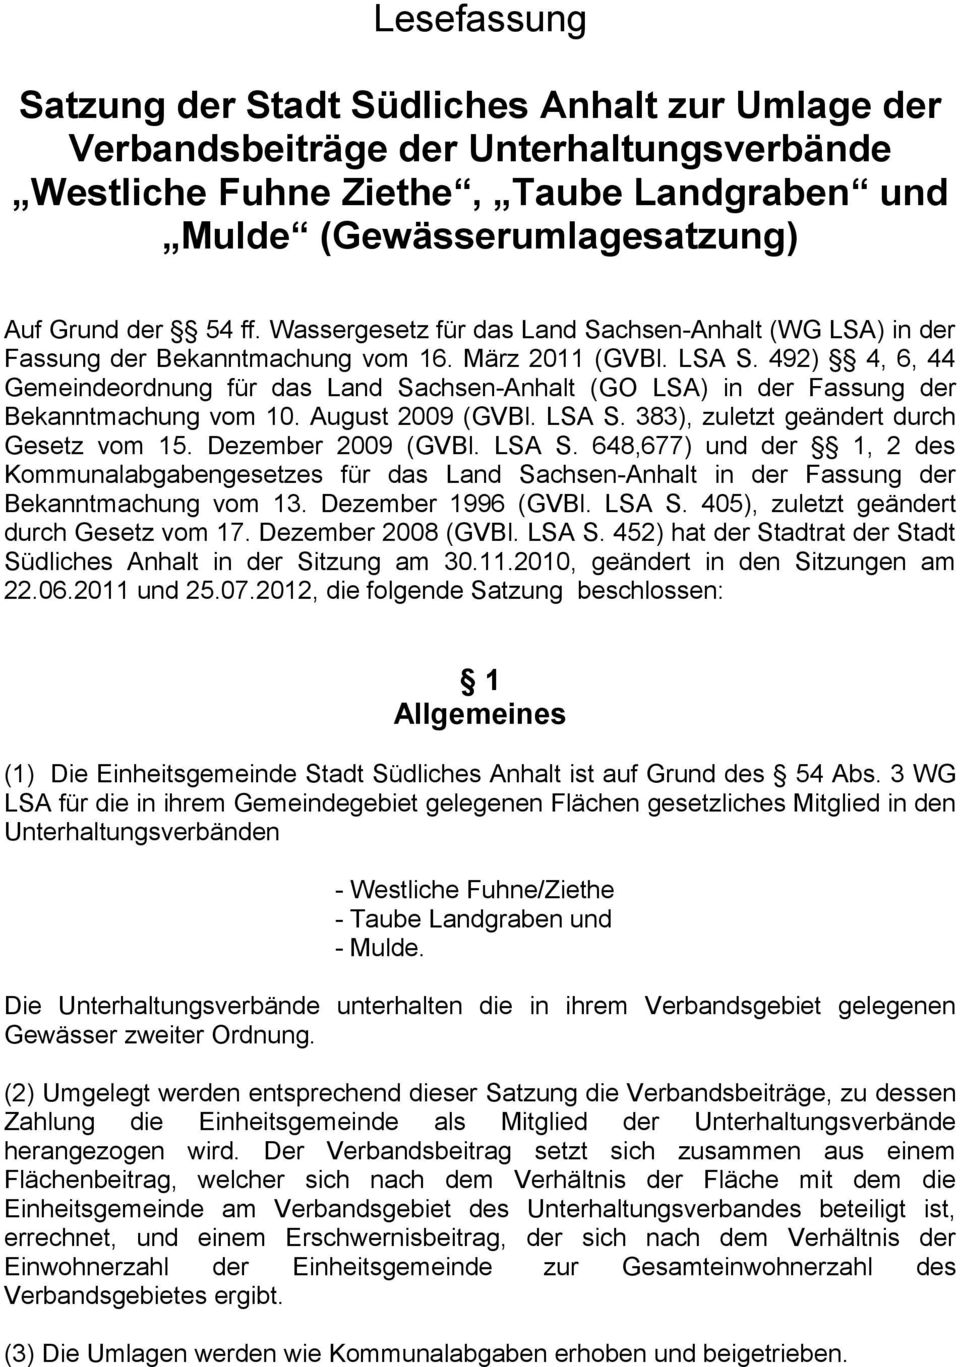 492) 4, 6, 44 Gemeindeordnung für das Land Sachsen-Anhalt (GO LSA) in der Fassung der Bekanntmachung vom 10. August 2009 (GVBl. LSA S. 383), zuletzt geändert durch Gesetz vom 15. Dezember 2009 (GVBl.